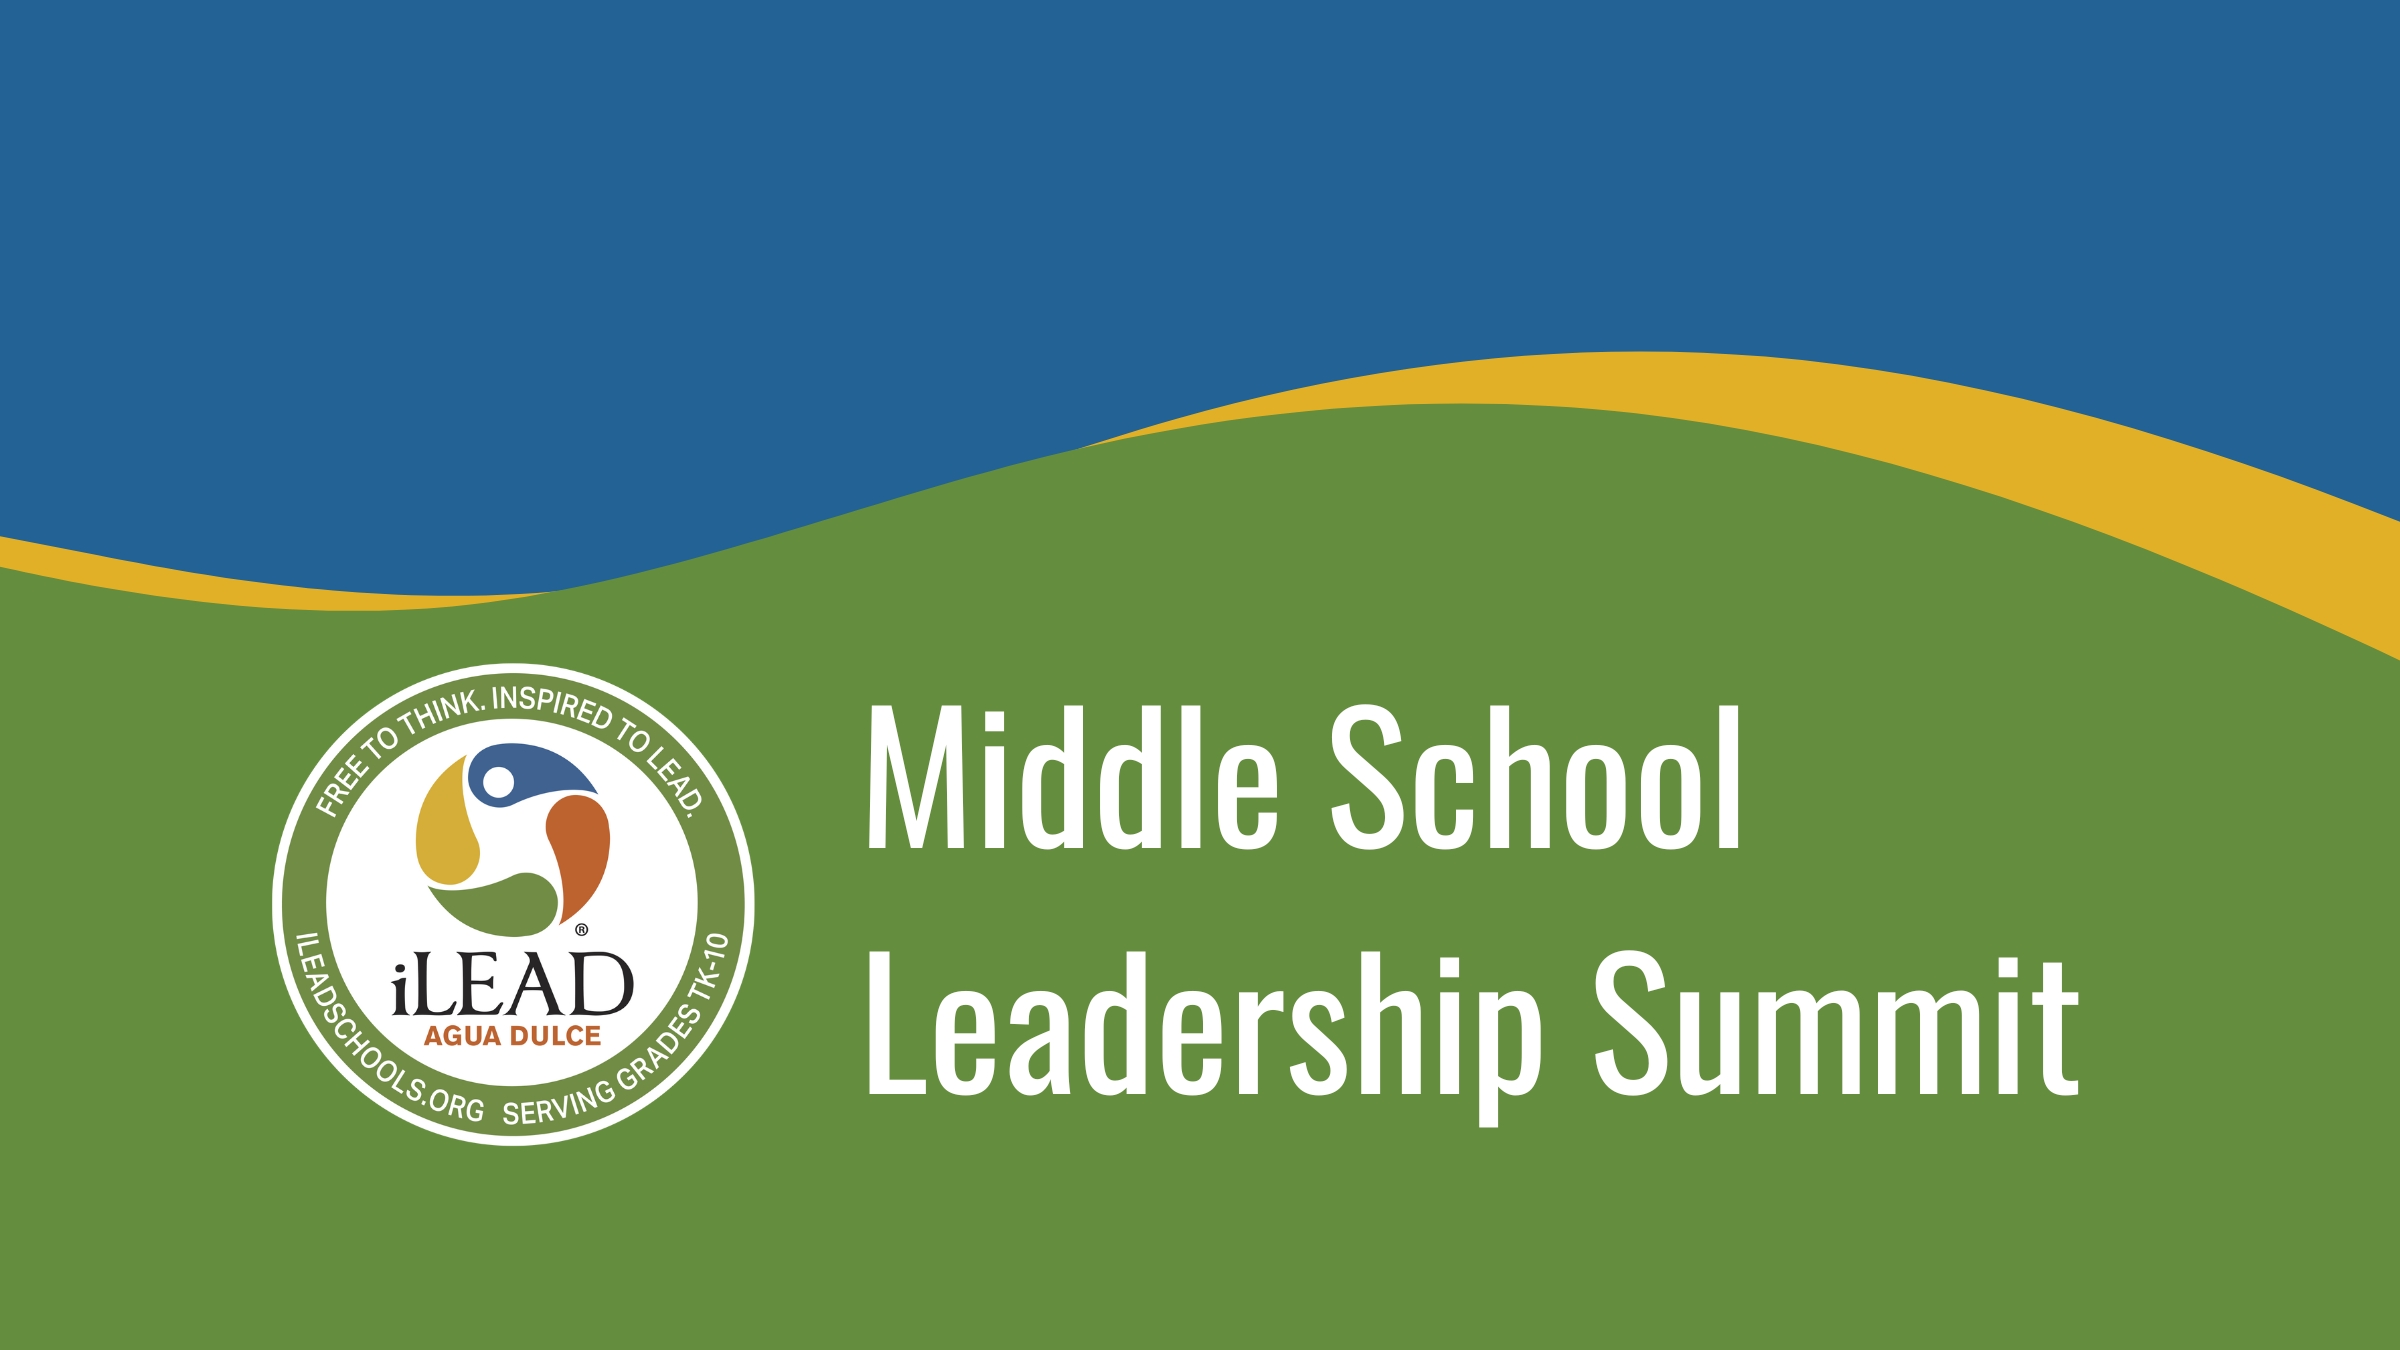 Middle School Leadership Summit